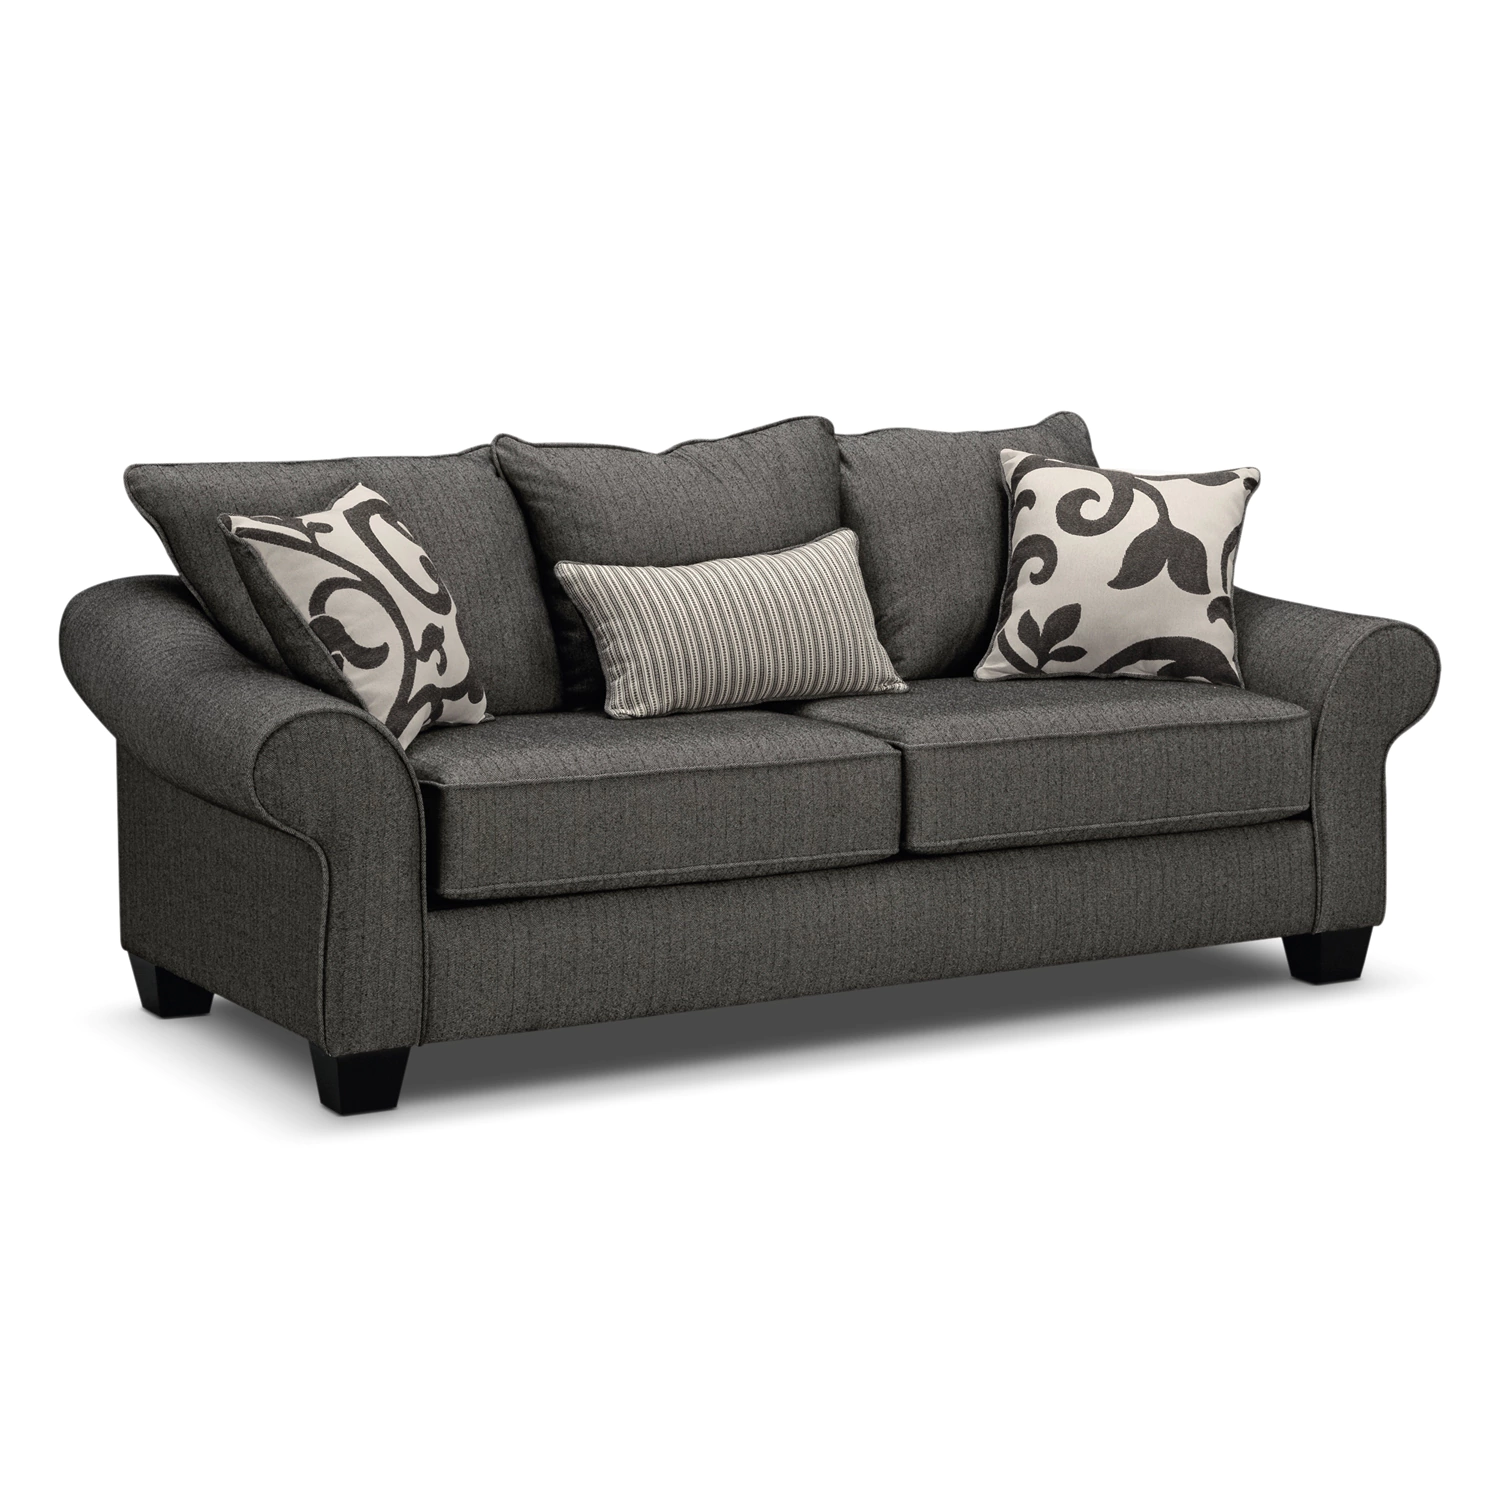 full sleeper sofa colette full innerspring sleeper sofa - gray ILAPCXR